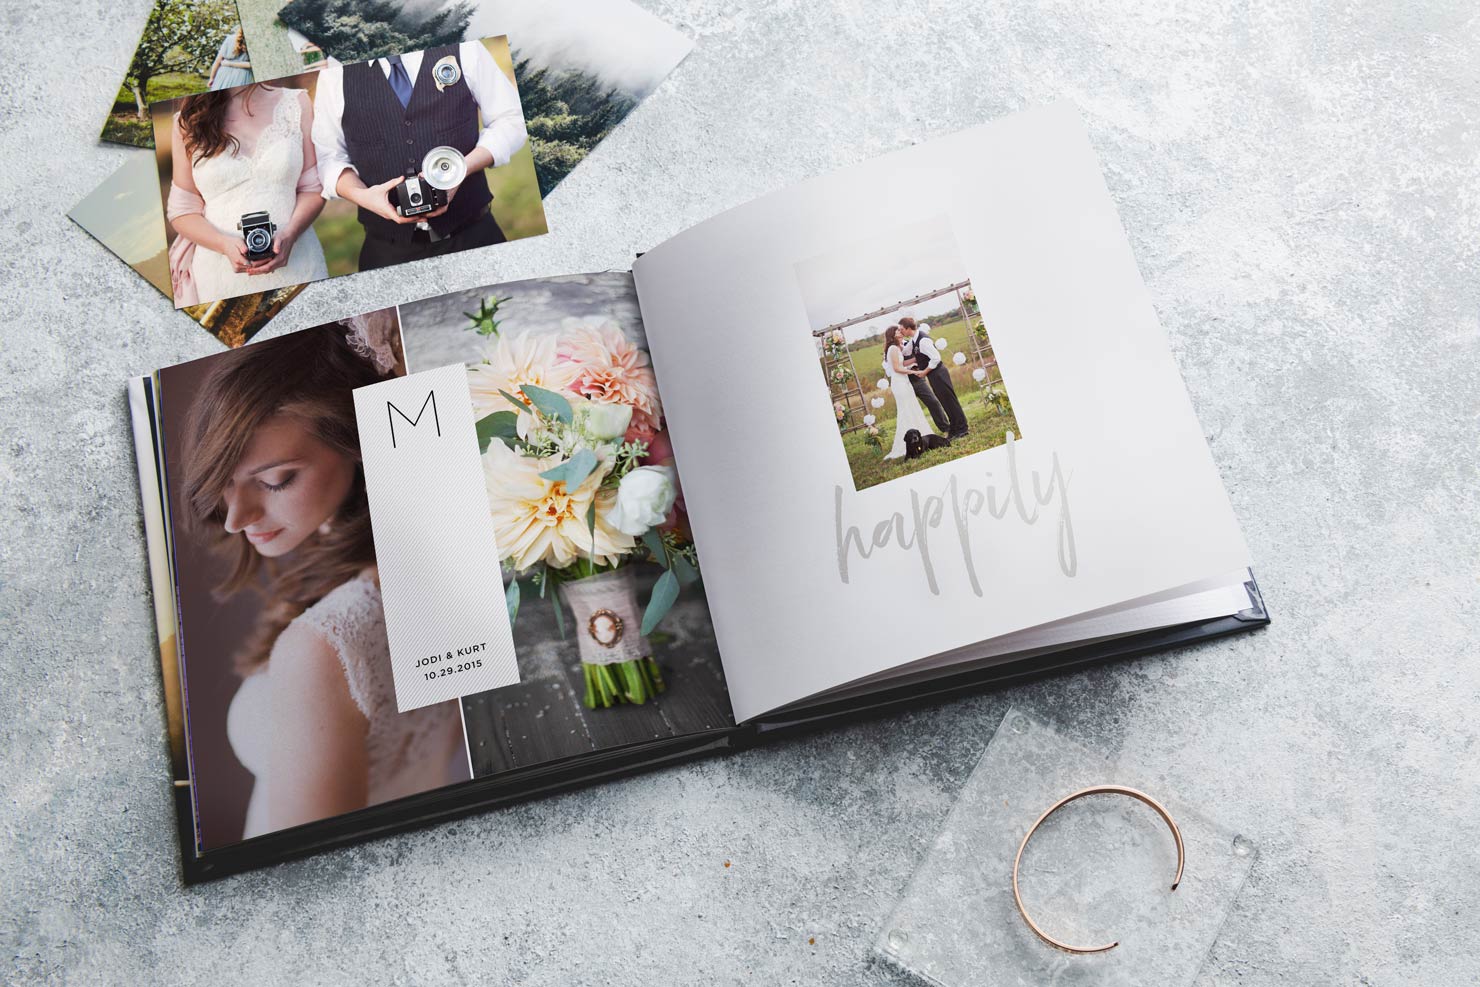 Chọn ảnh album cưới là công đoạn quan trọng trong quá trình tạo ra một album ảnh đẹp và bắt mắt. Mimosa Wedding sẽ cùng bạn chọn những bức ảnh tuyệt đẹp nhất để đưa vào album của mình, cùng với những gợi ý và chỉ dẫn chuyên nghiệp từ các nhiếp ảnh gia hàng đầu.